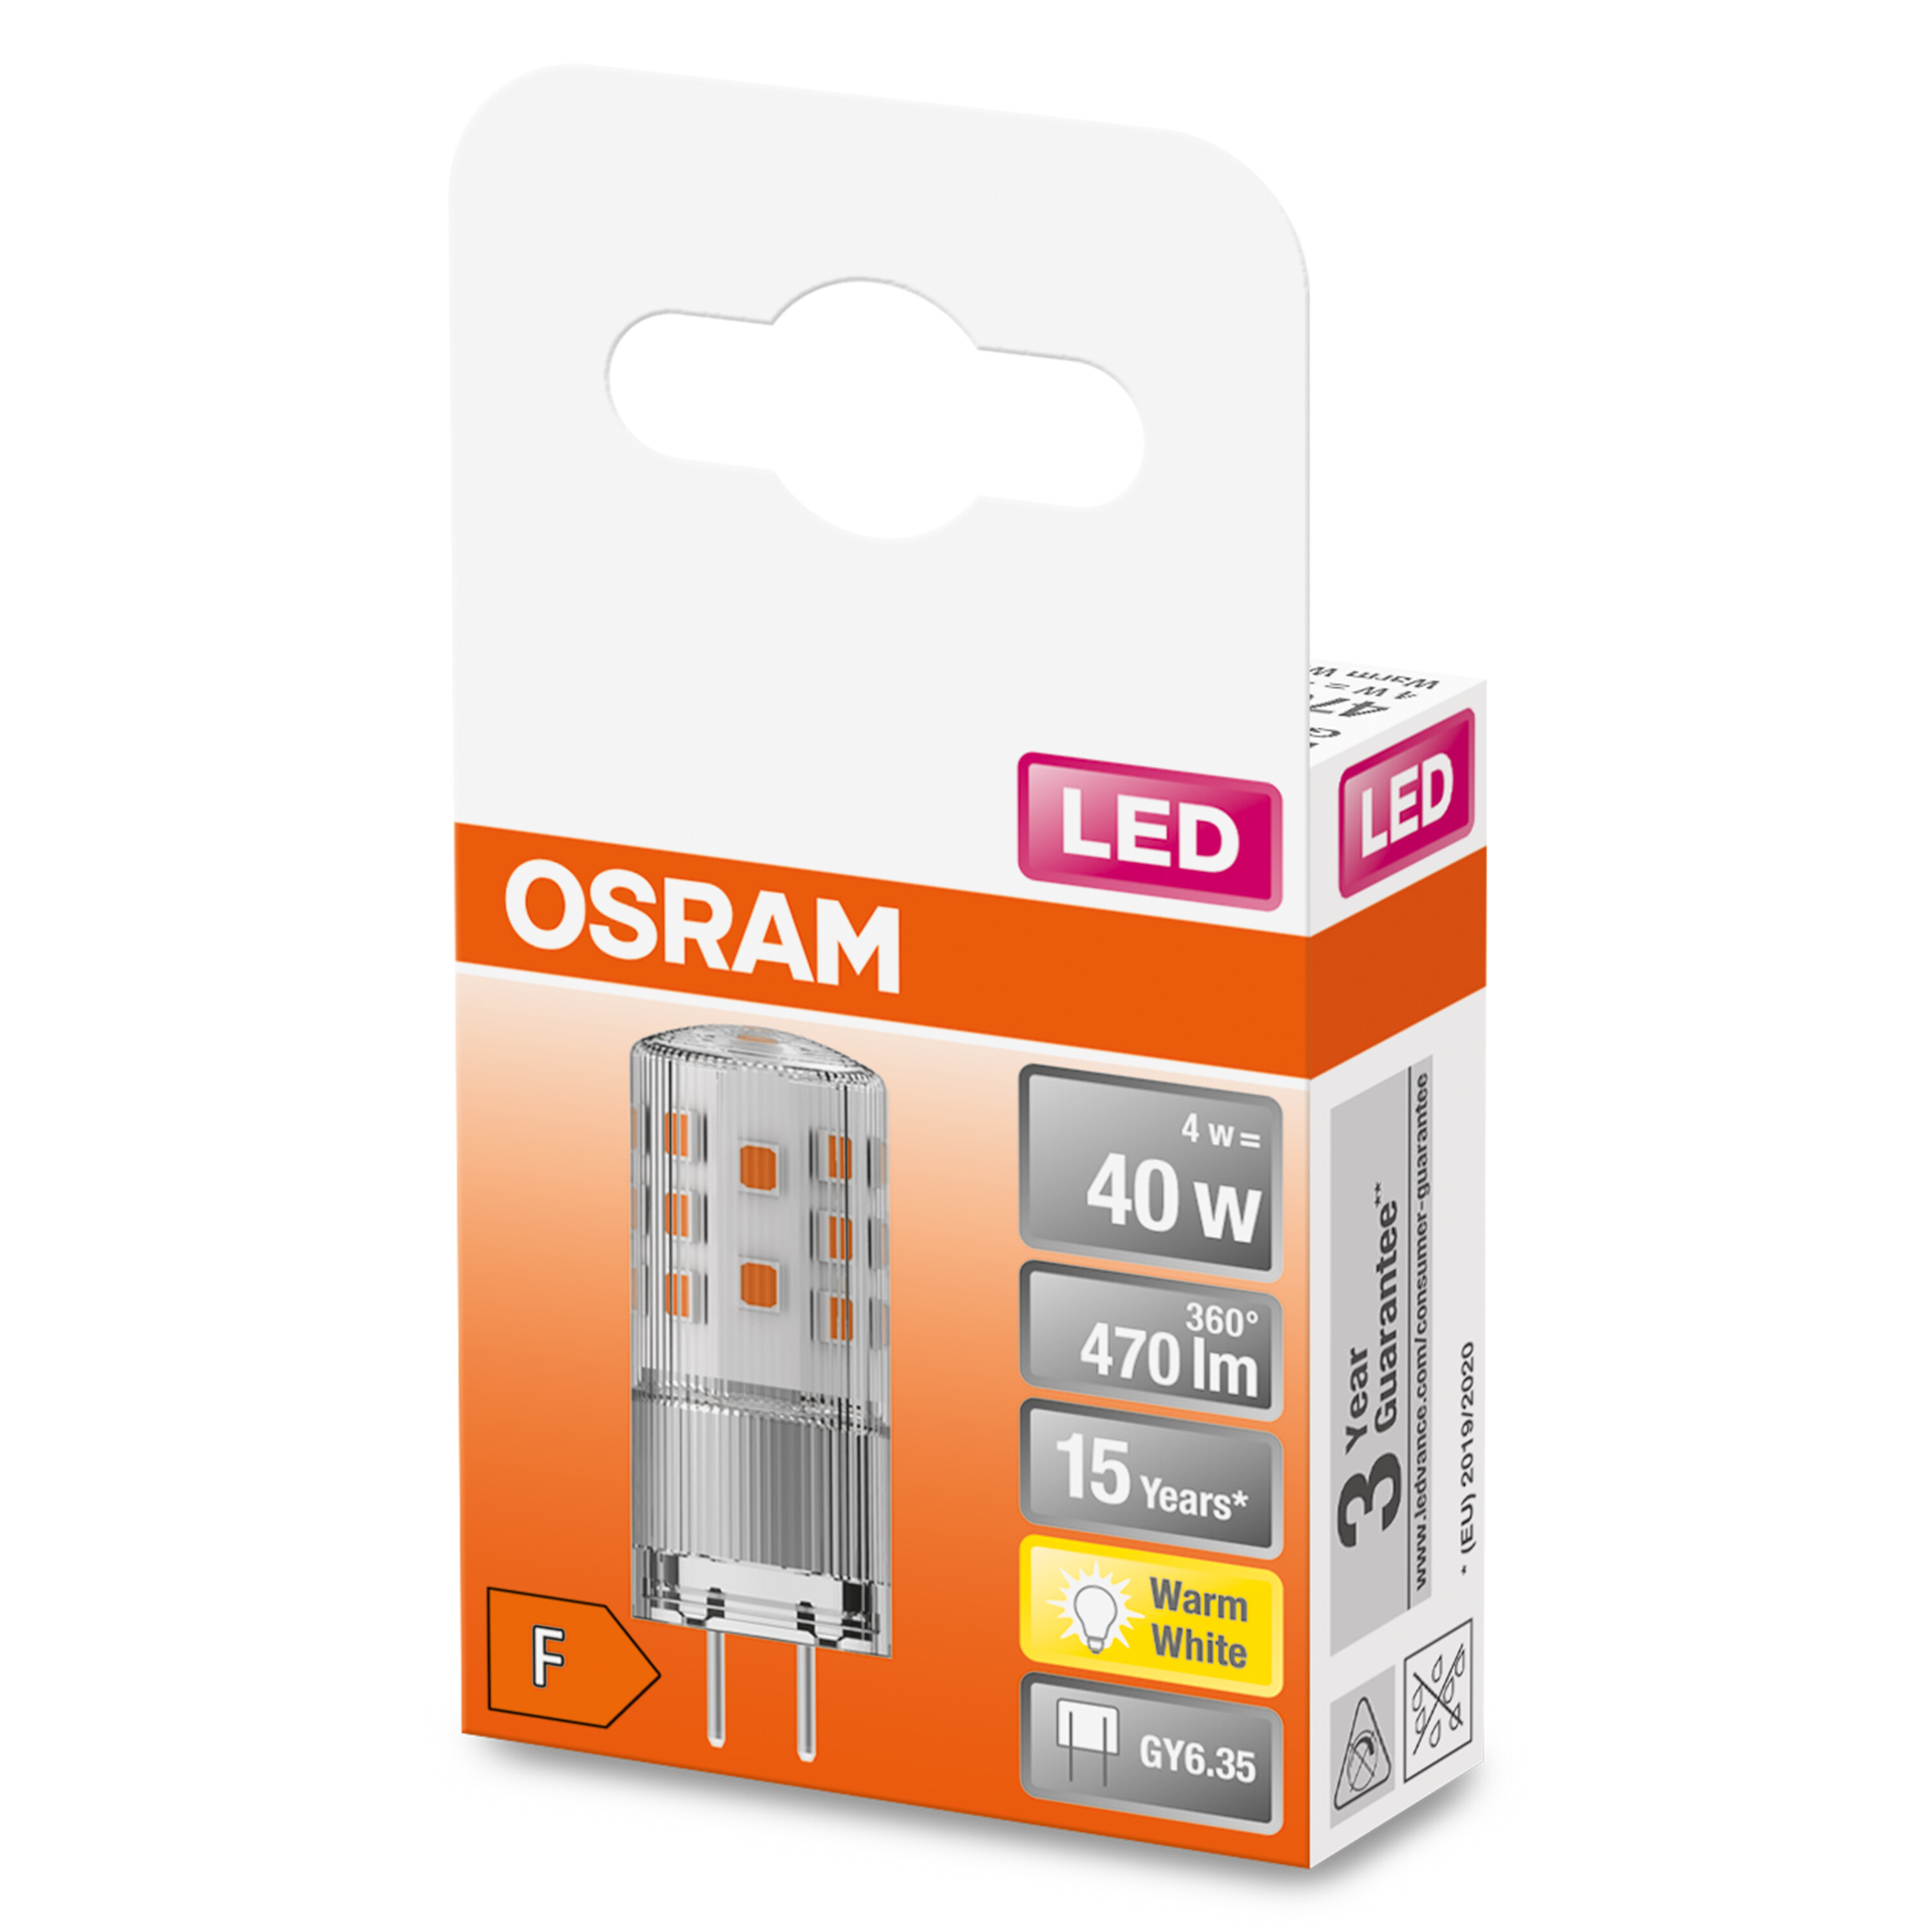 OSRAM  LED PIN 12 Warmweiß LED lumen Lampe V 470